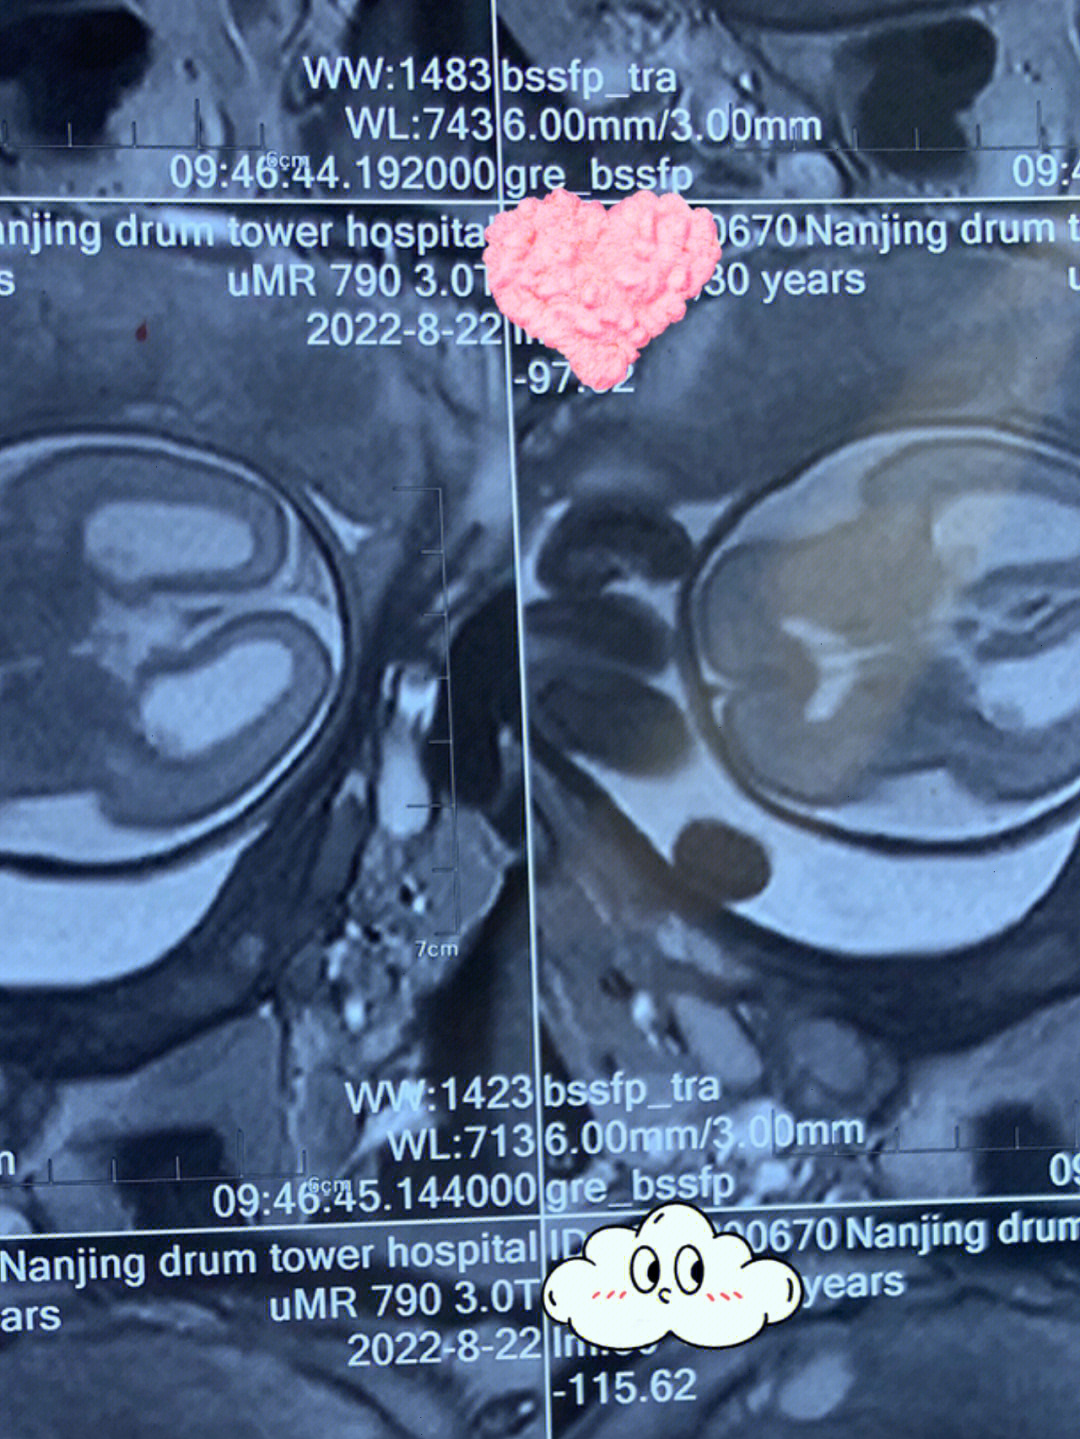 胎儿核磁共振女孩图图片